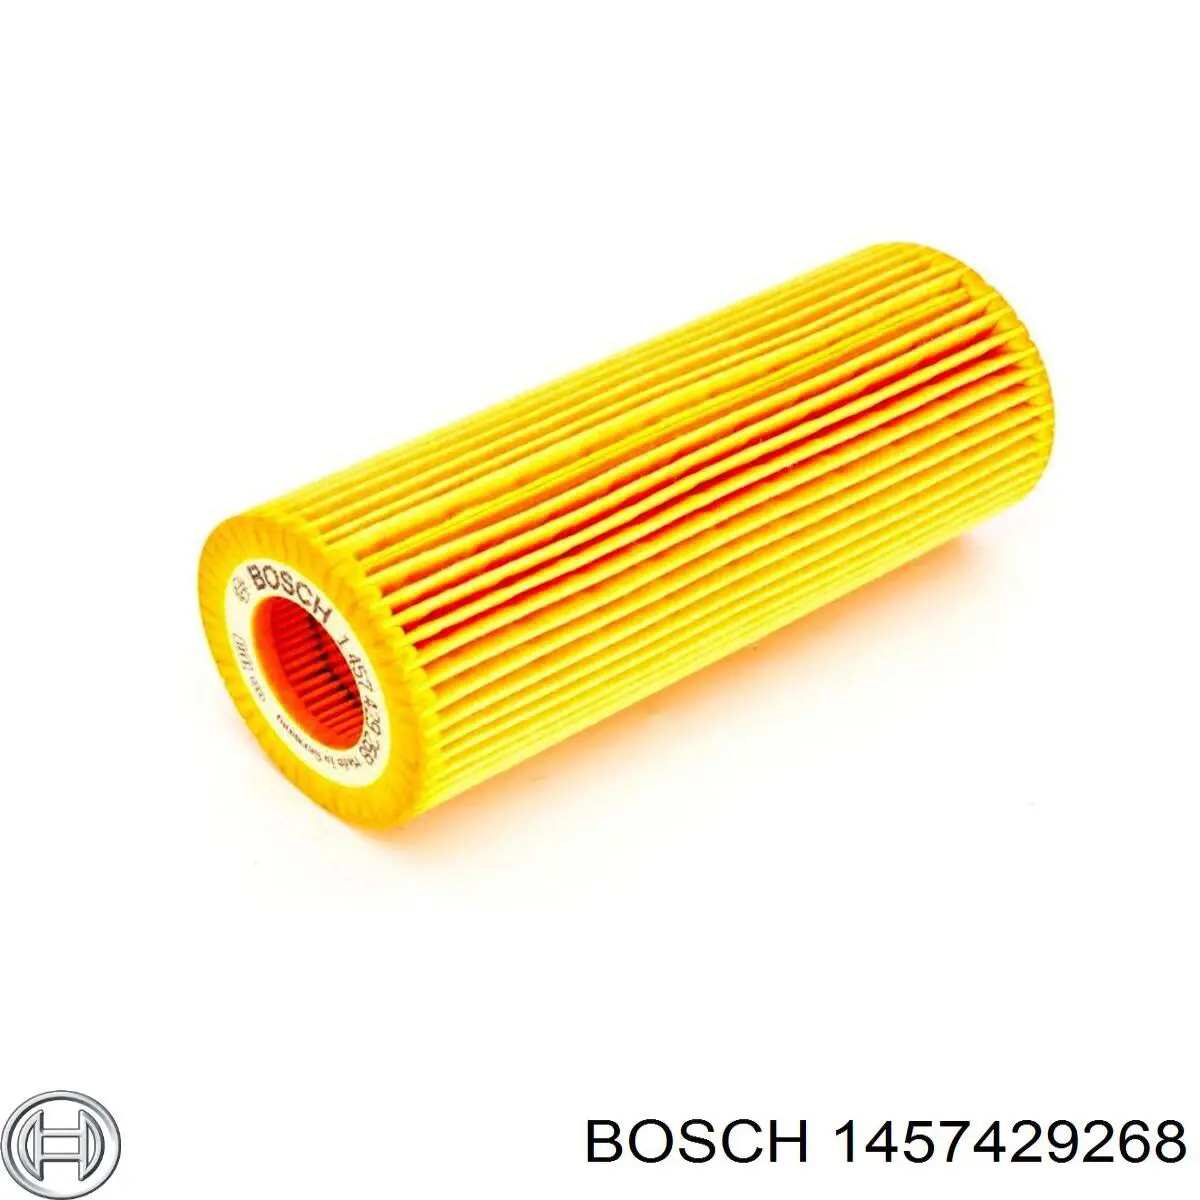 1457429268 Bosch filtro de aceite